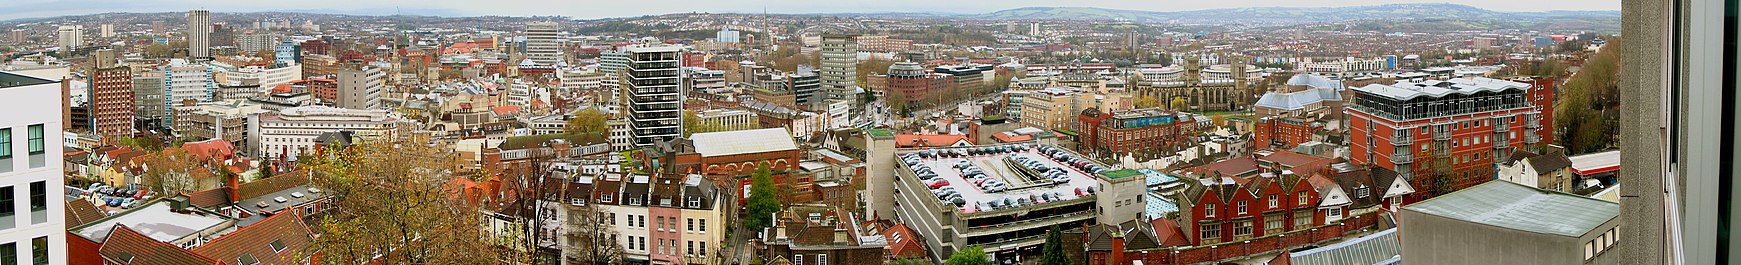 Uma vista panorâmica sobre uma paisagem urbana de blocos de escritórios, prédios antigos, pináculos de igrejas e um estacionamento de vários andares.  Ao longe estão as colinas.